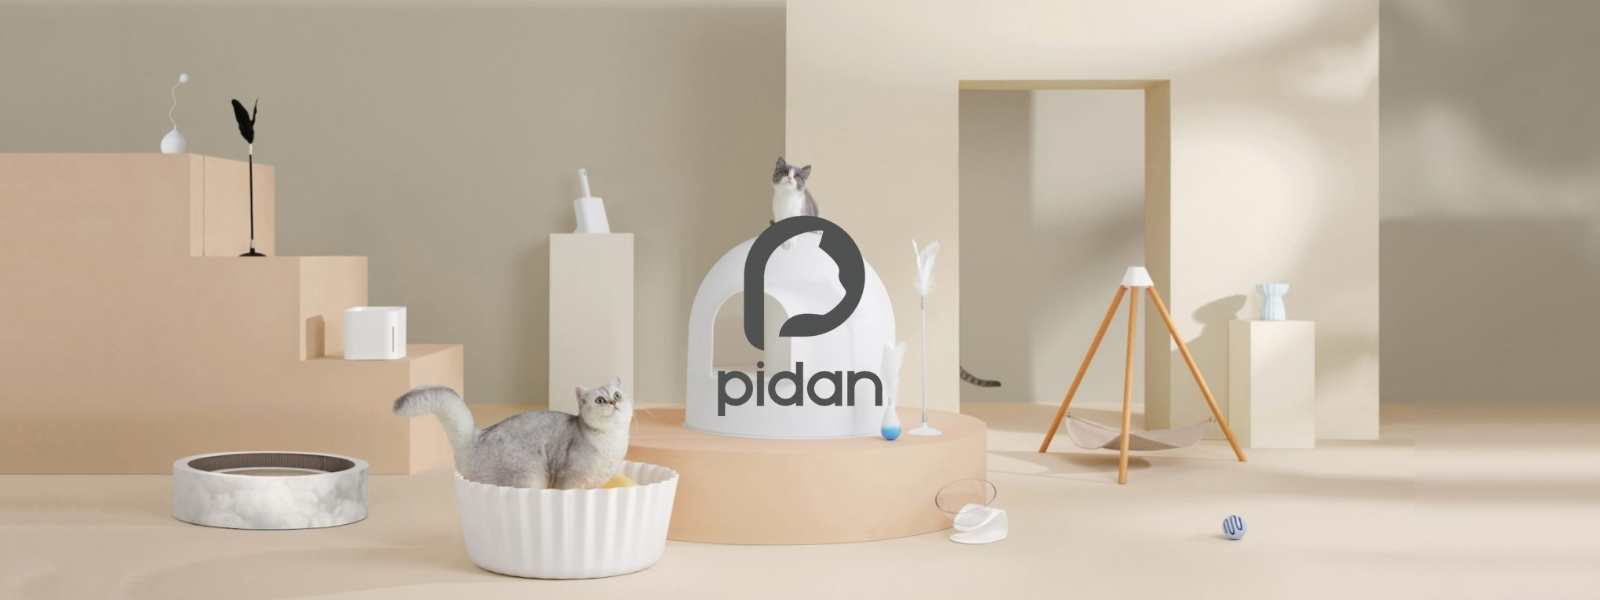 Pidan Studio Cat Products